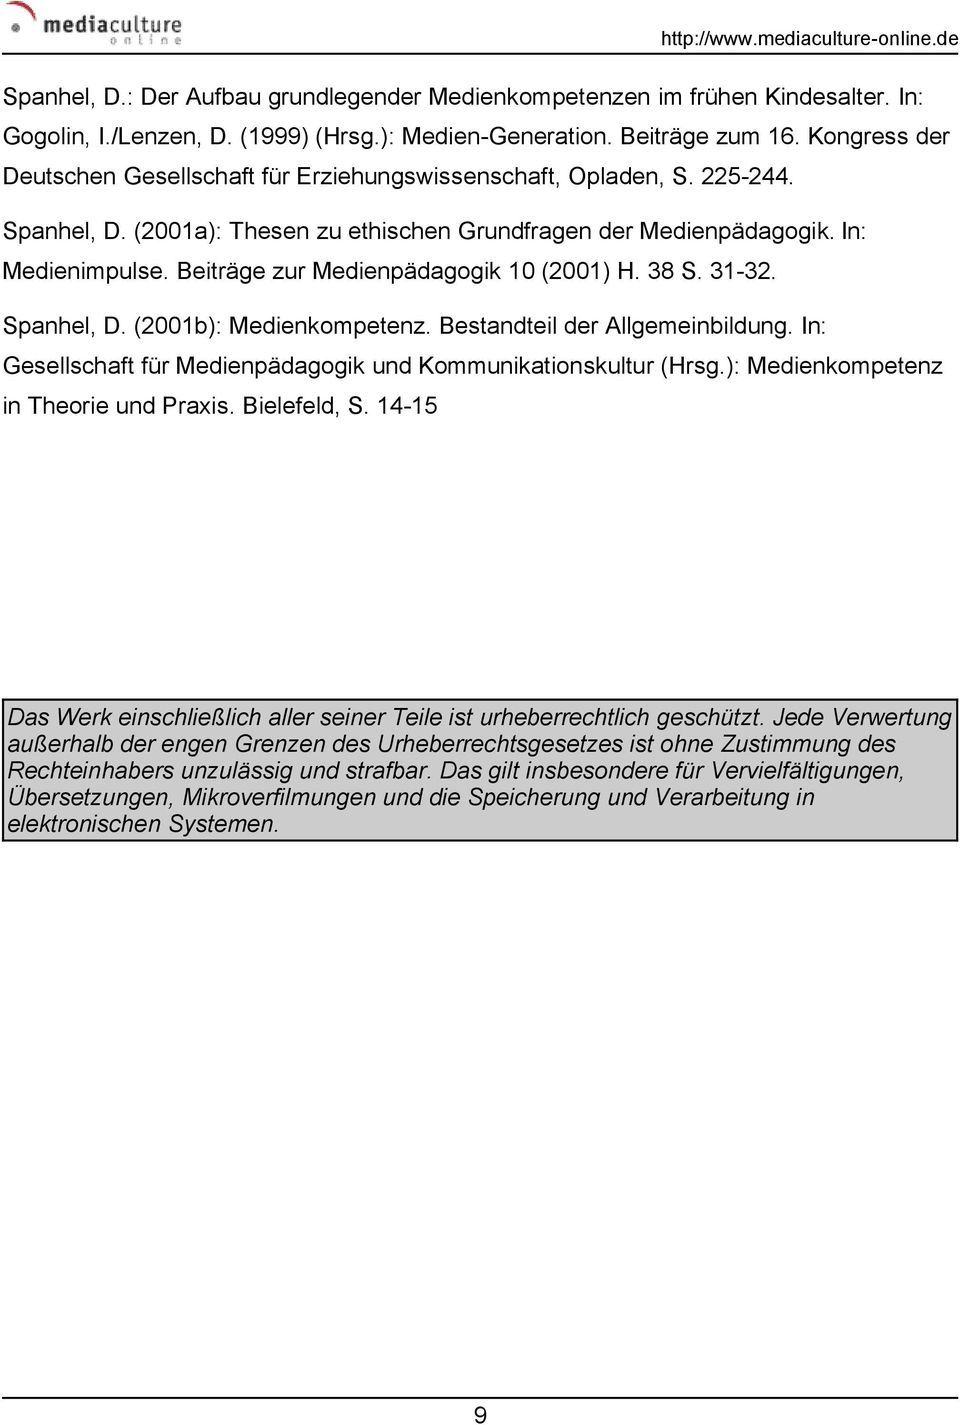 Beiträge zur Medienpädagogik 10 (2001) H. 38 S. 31-32. Spanhel, D. (2001b): Medienkompetenz. Bestandteil der Allgemeinbildung. In: Gesellschaft für Medienpädagogik und Kommunikationskultur (Hrsg.